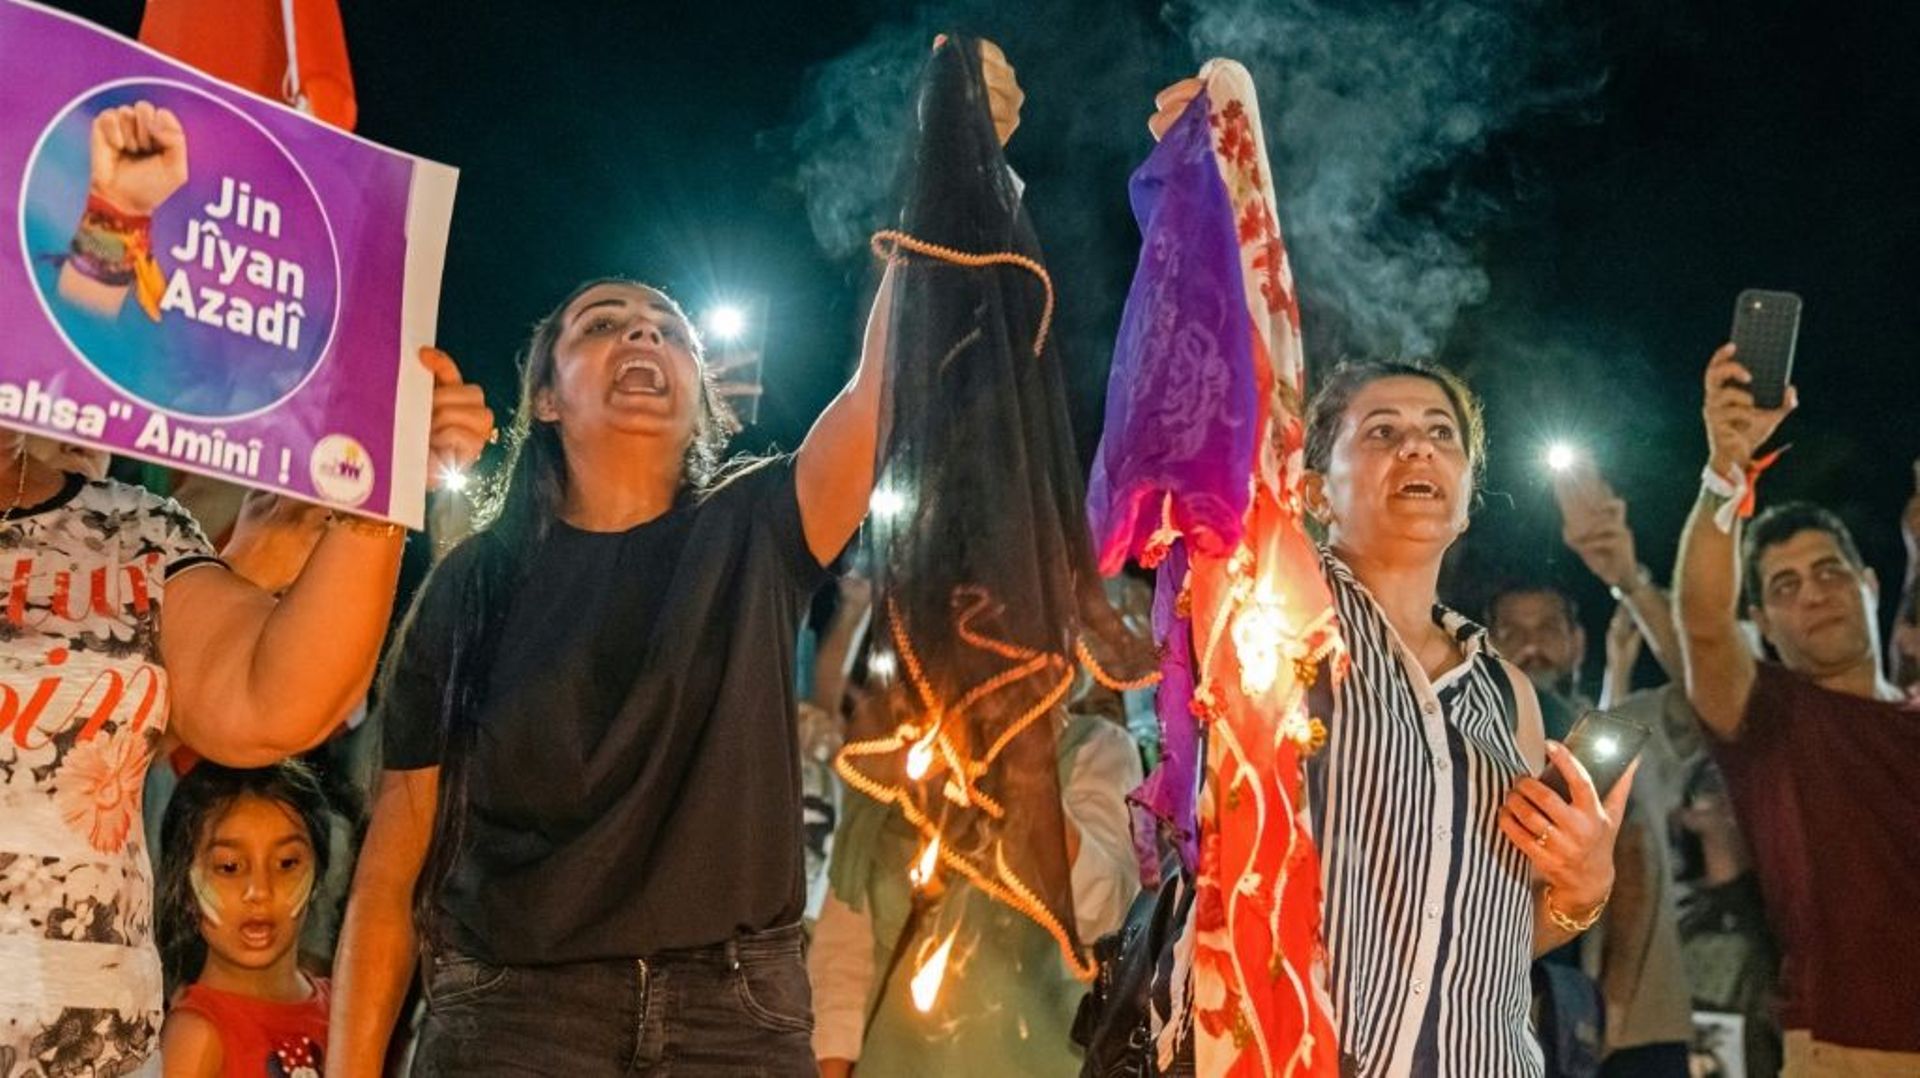 Des femmes brûlent des voiles en solidarité avec les manifestantes en Iran, lors d'un rassemblement à Limassol, le 1er octobre 2022 dans le sud de Chypre